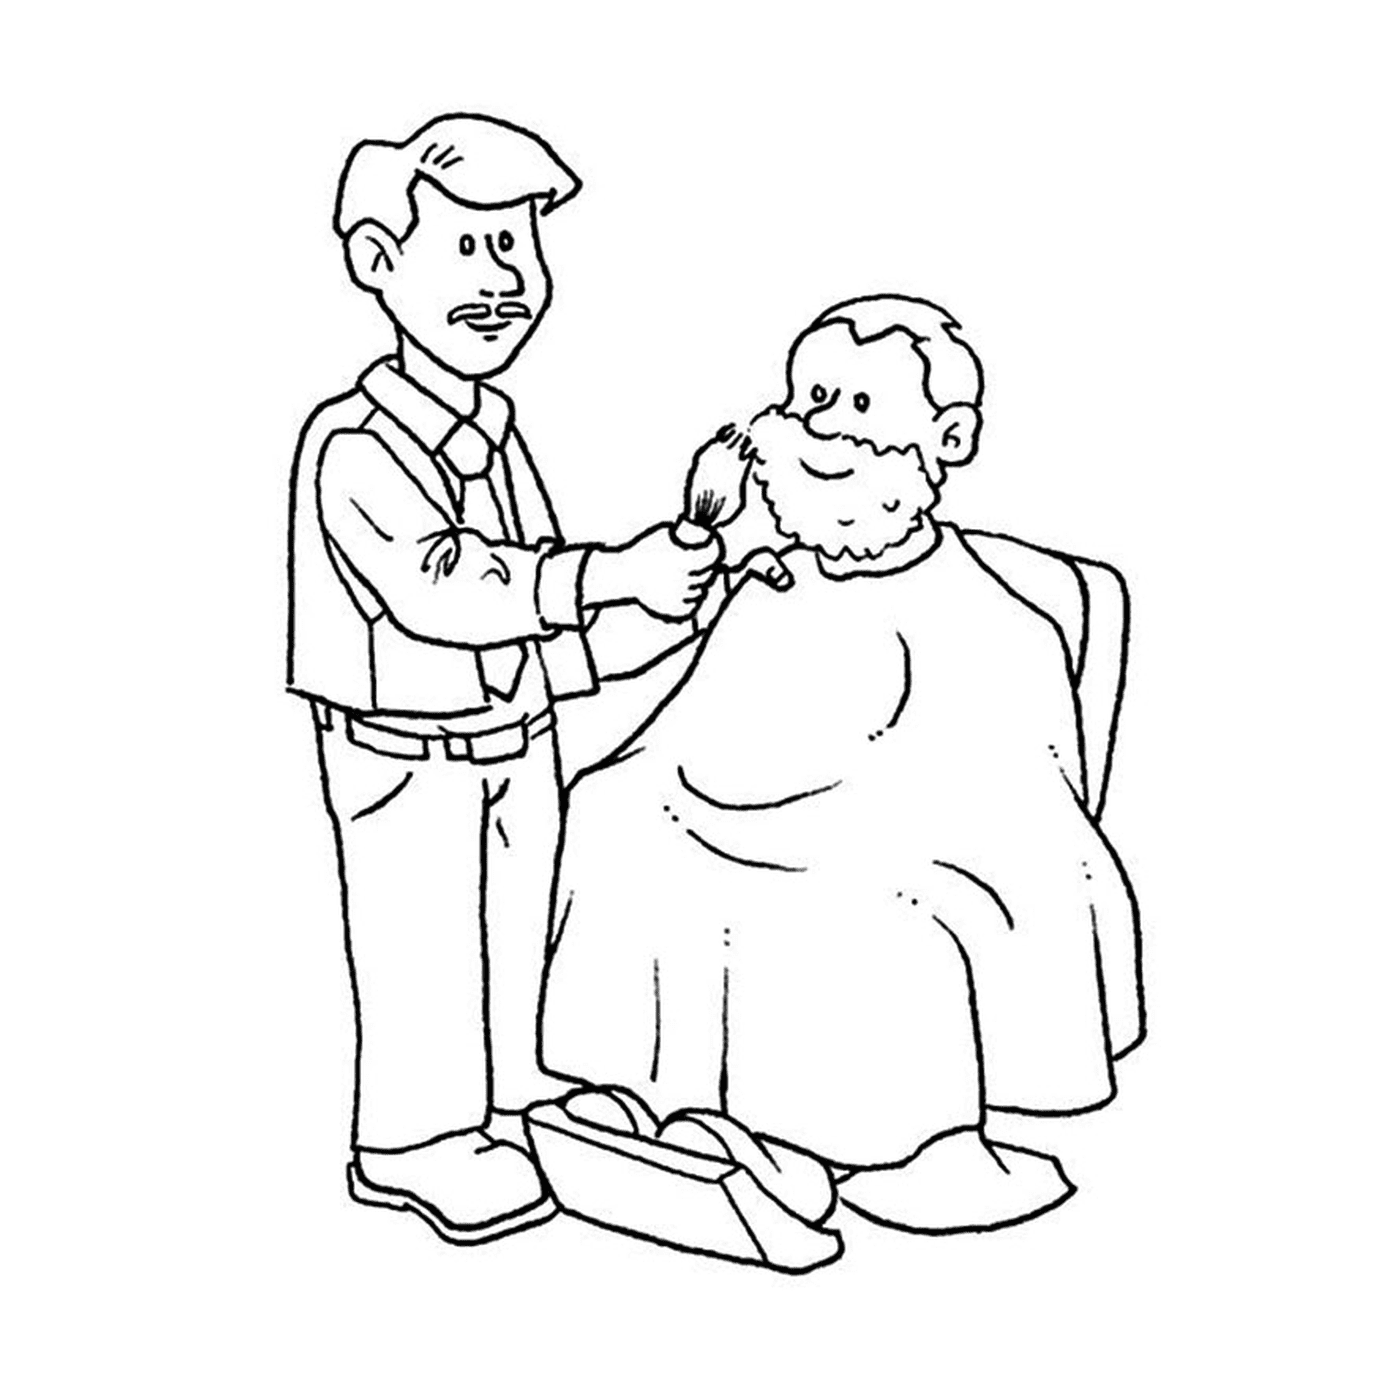  Барбье со стариком, которого стрижет парикмахер 